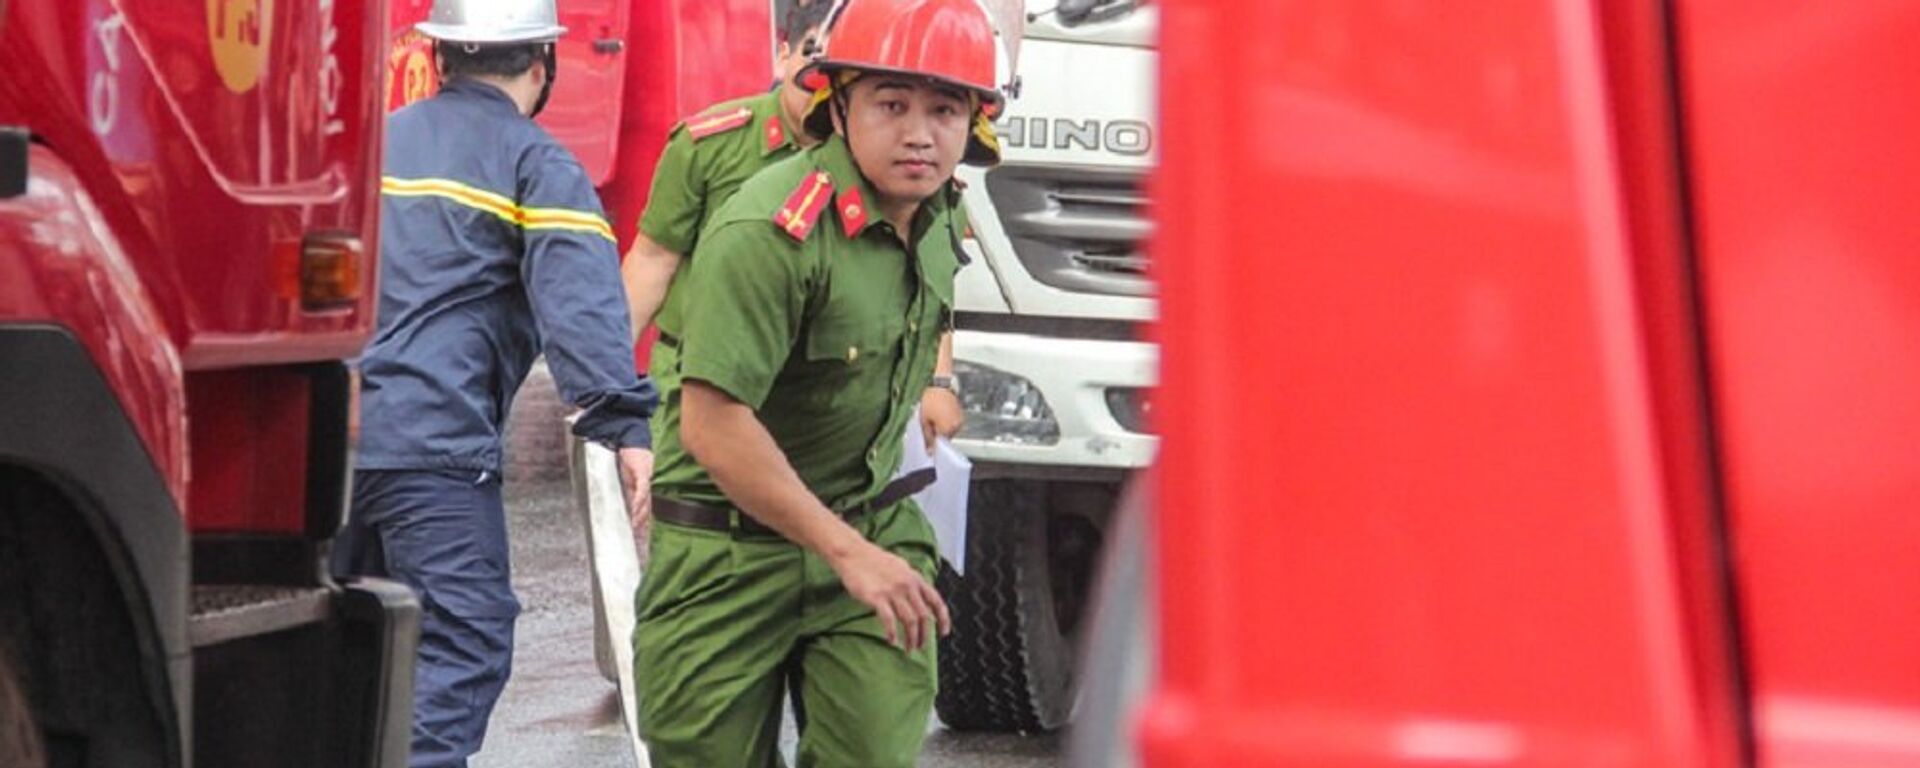 Lính cứu hỏa cùng nhiều lực lượng khác được huy động đến hiện trường vụ cháy. - Sputnik Việt Nam, 1920, 09.10.2018